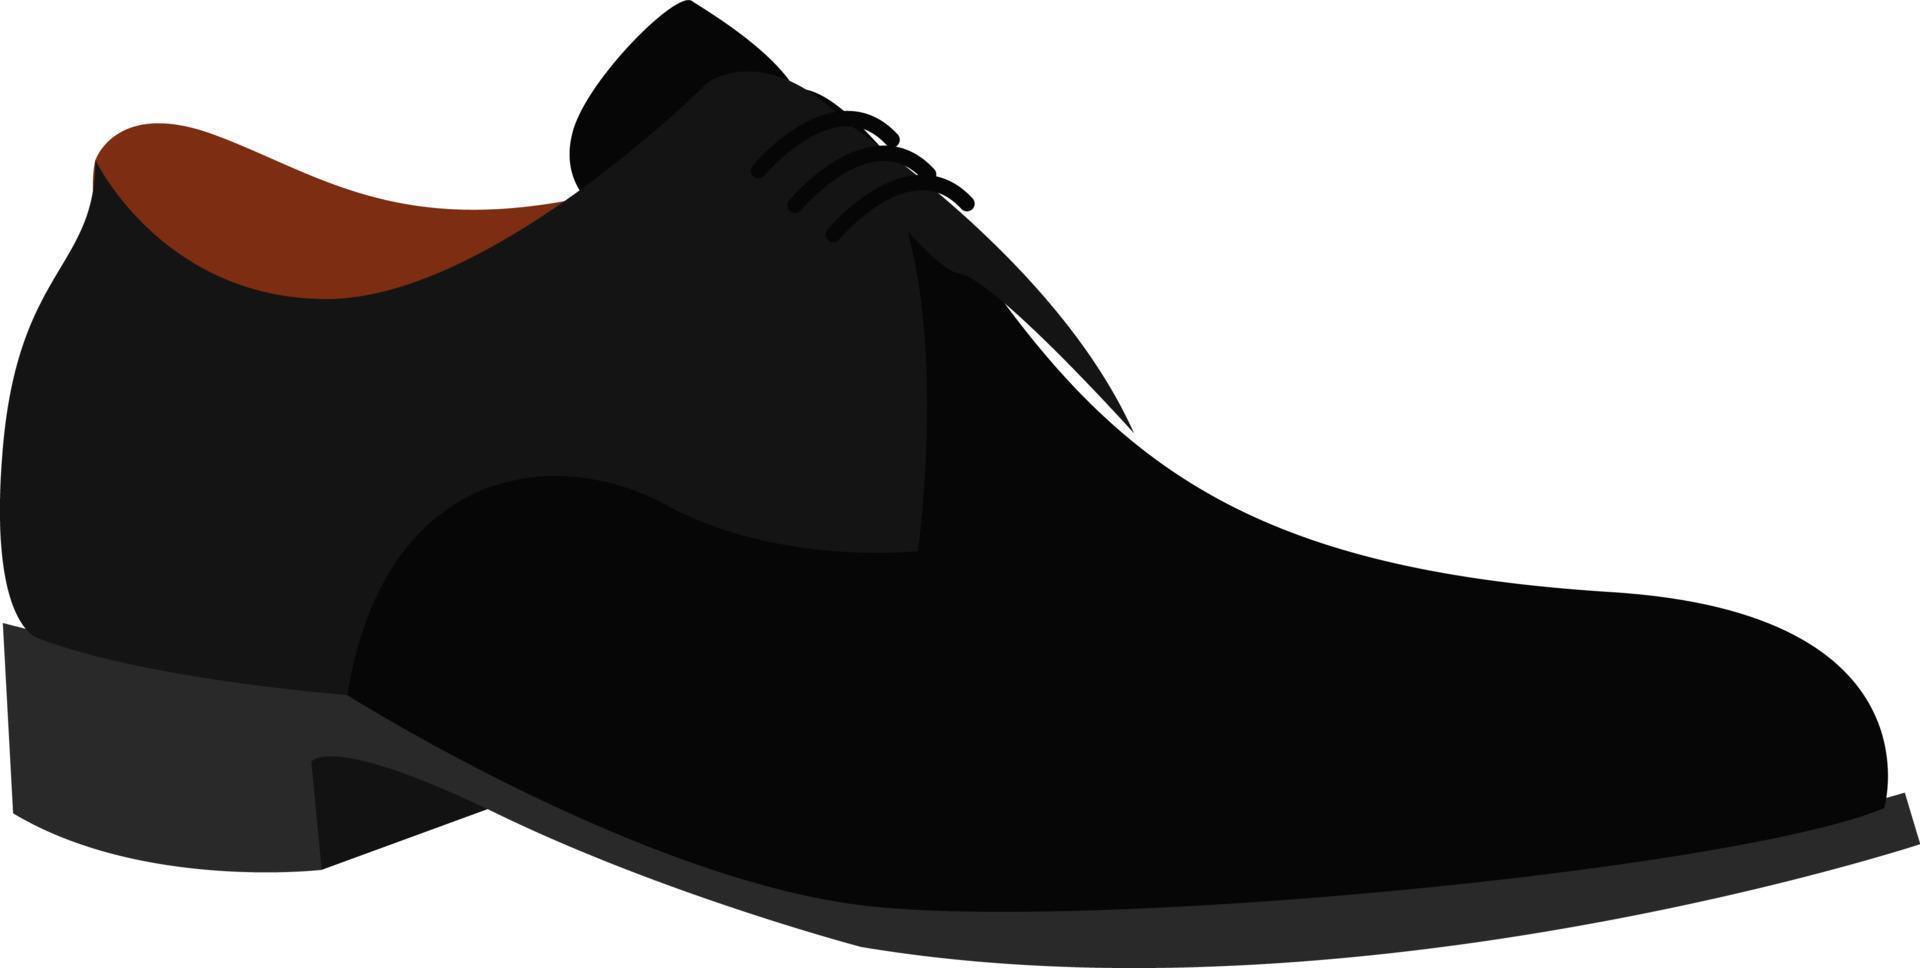 svart sko, illustration, vektor på vit bakgrund.